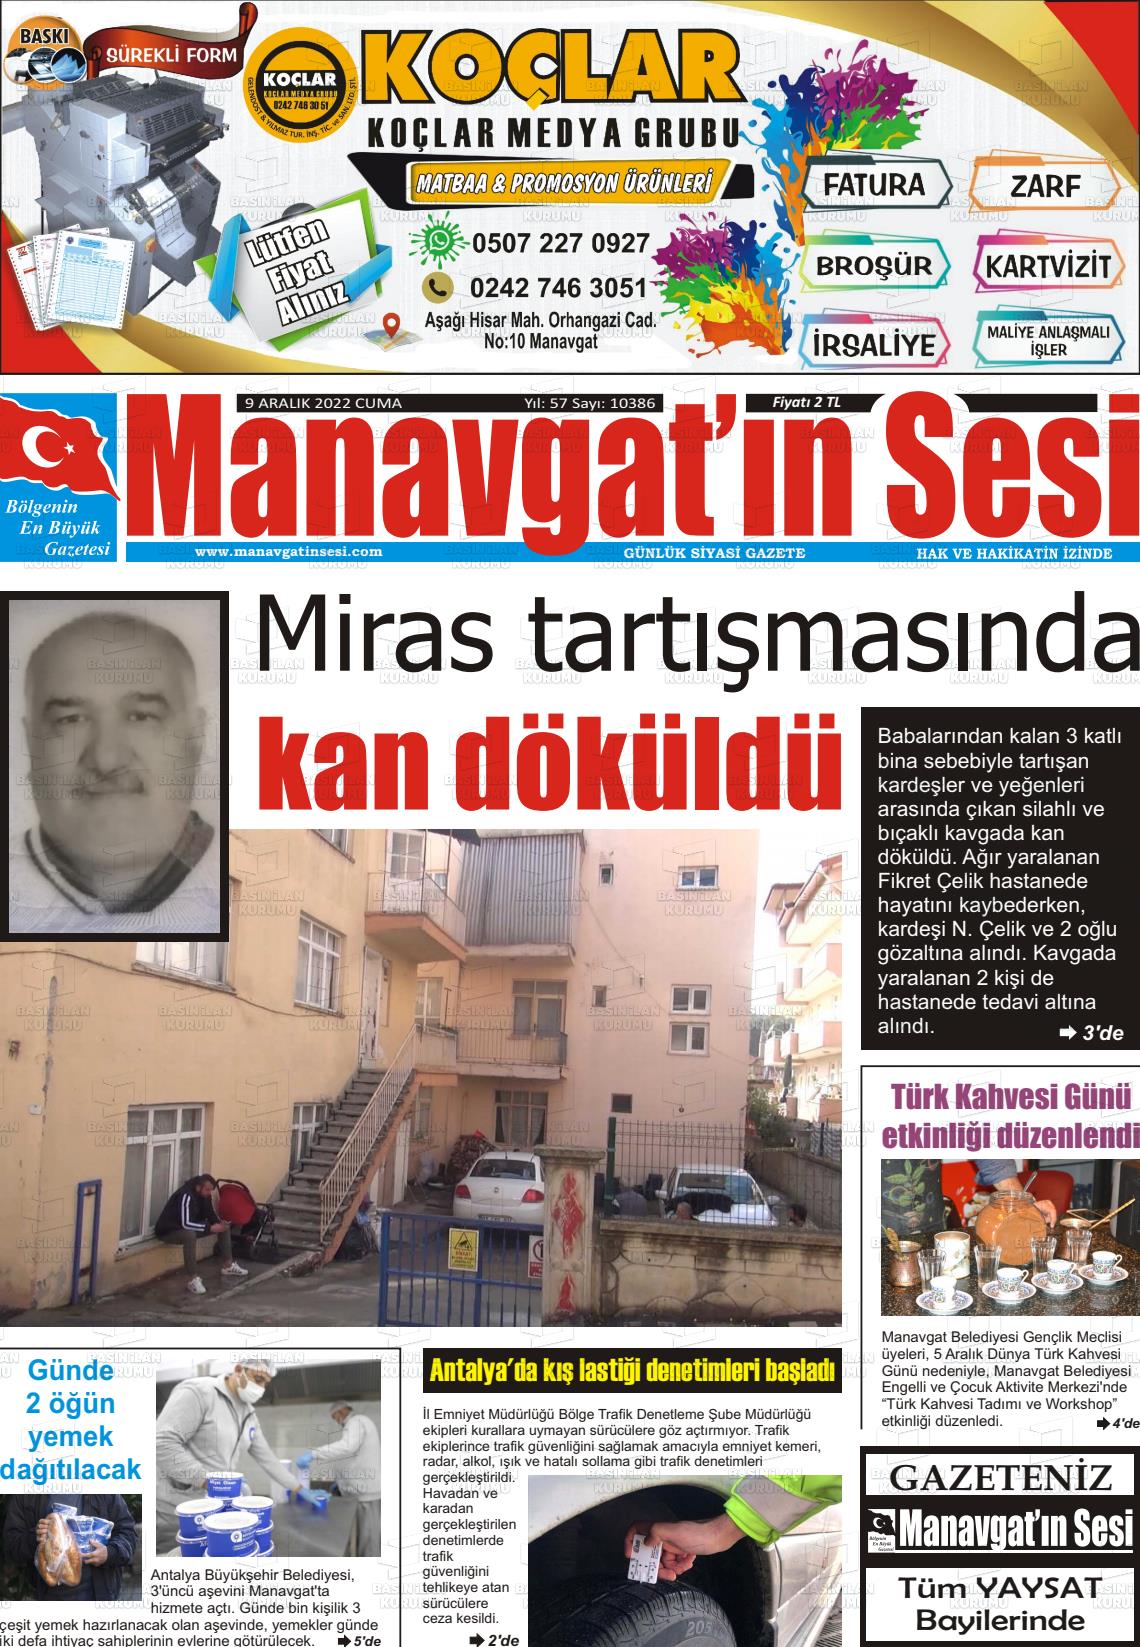 09 Aralık 2022 Manavgat'ın Sesi Gazete Manşeti